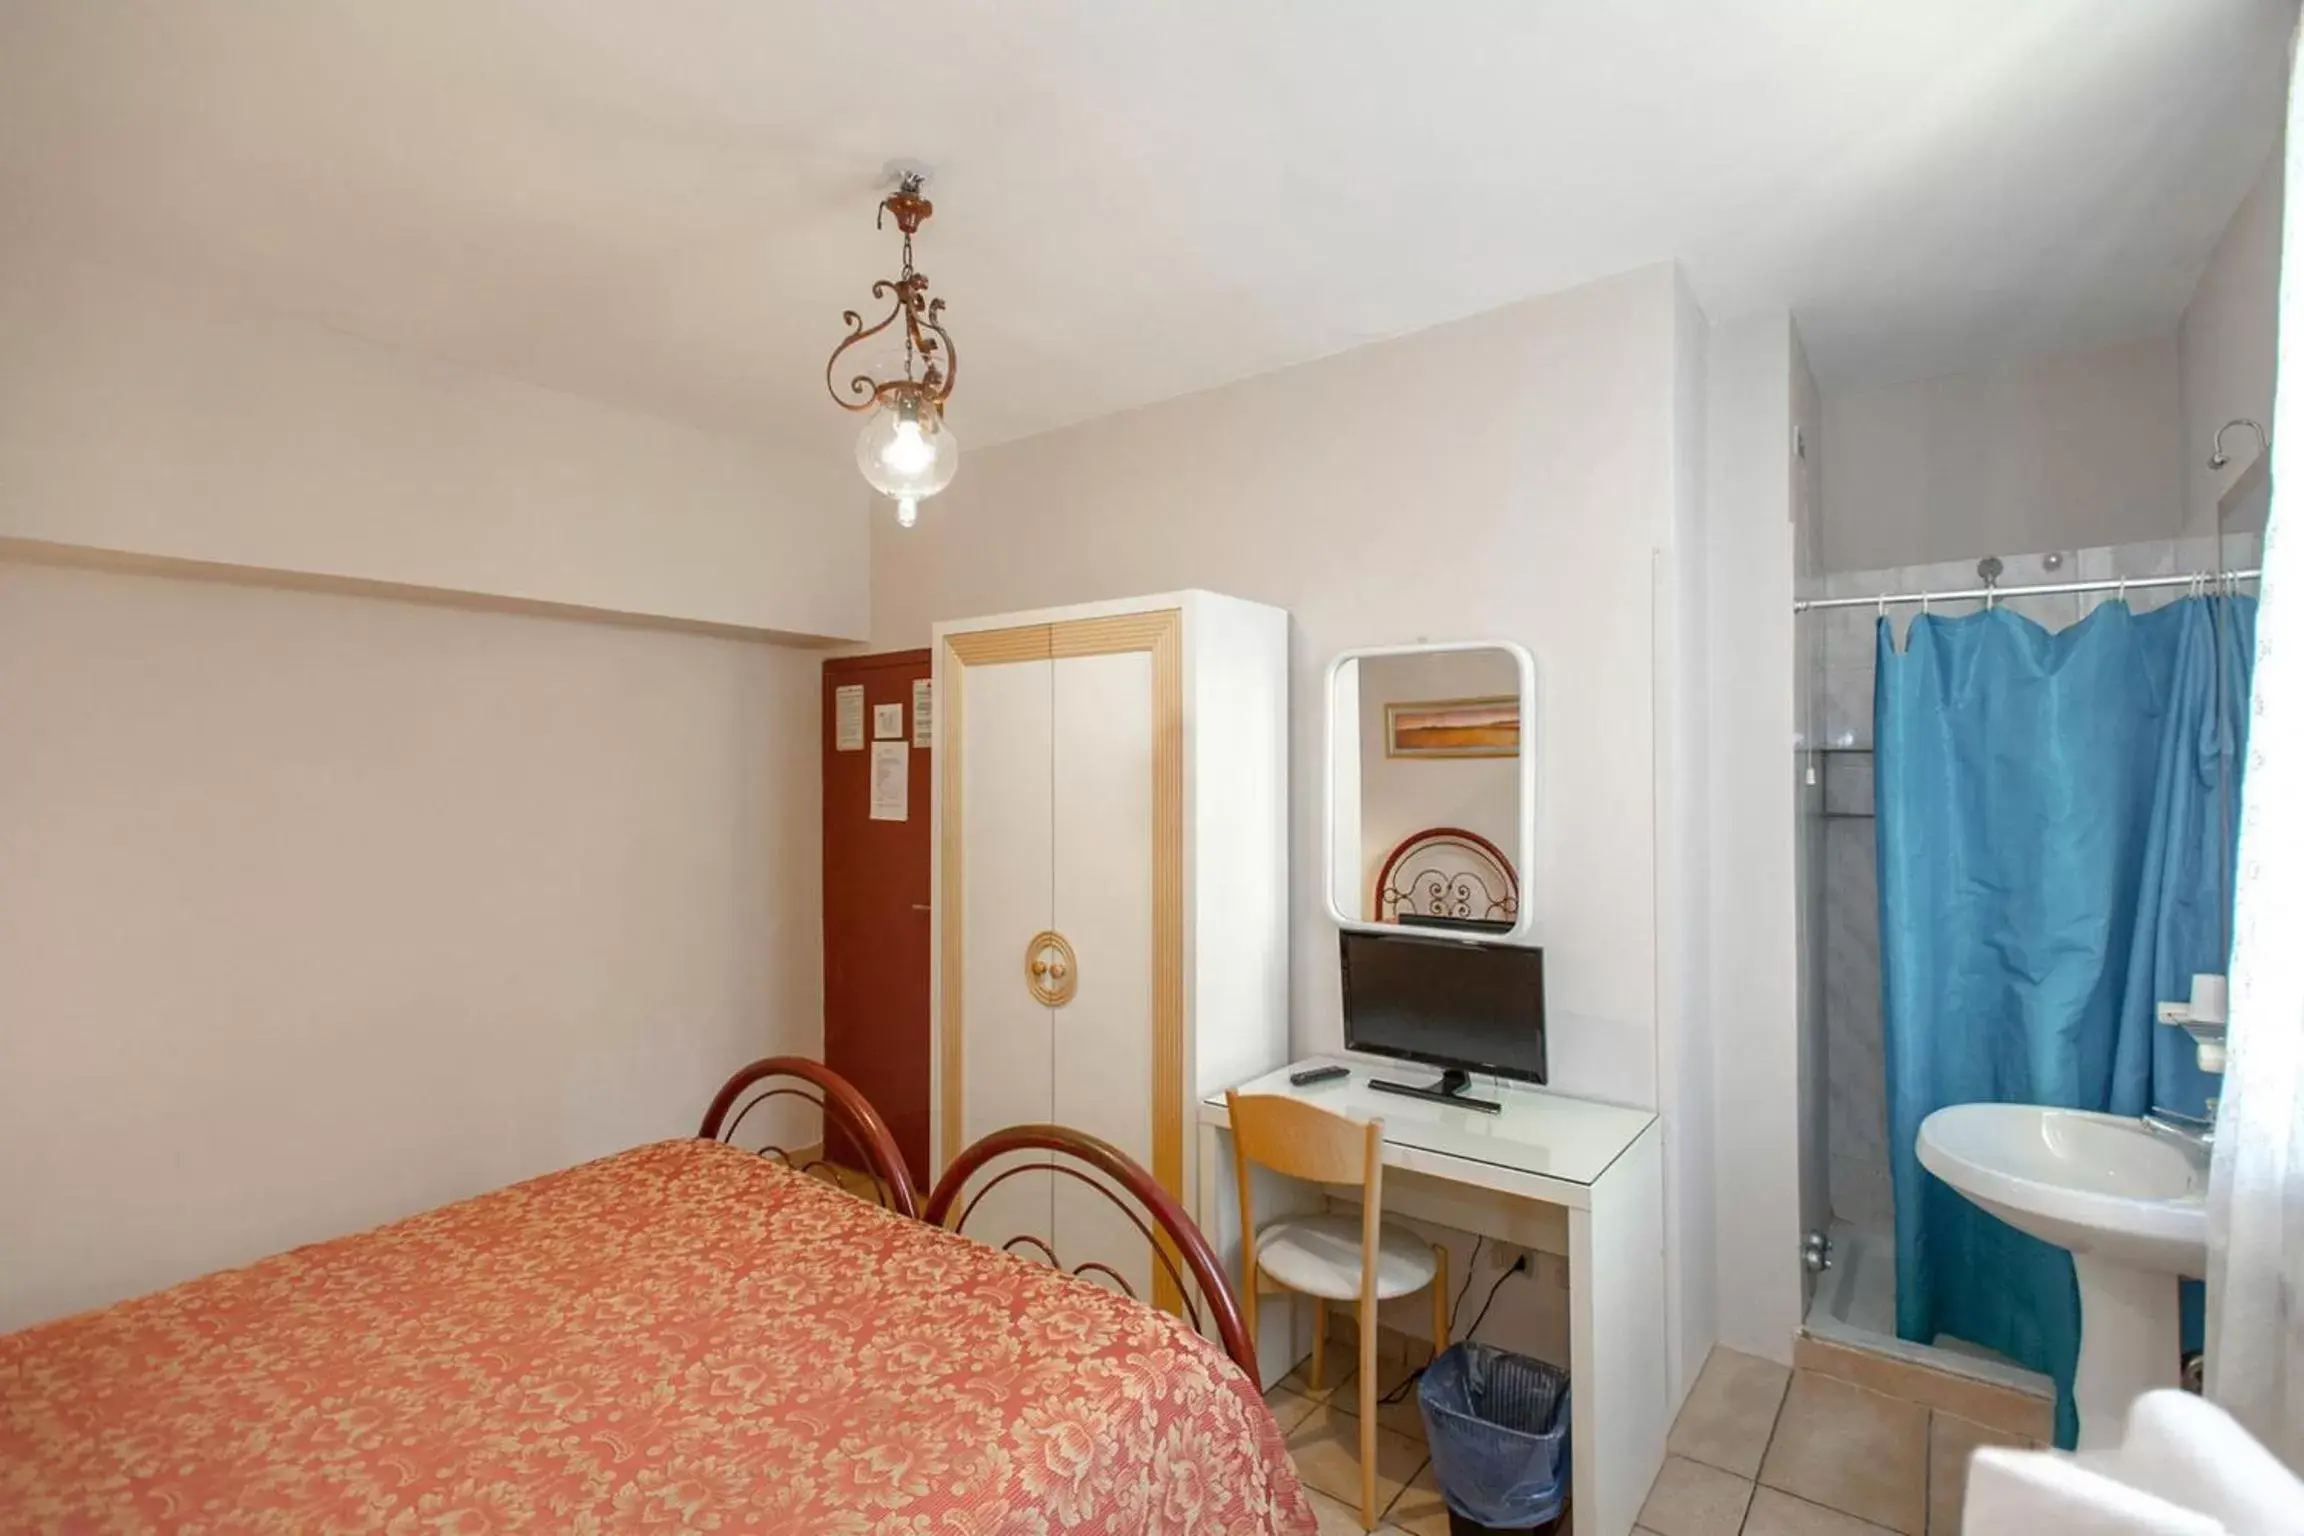 Photo of the whole room in Hotel Masaccio